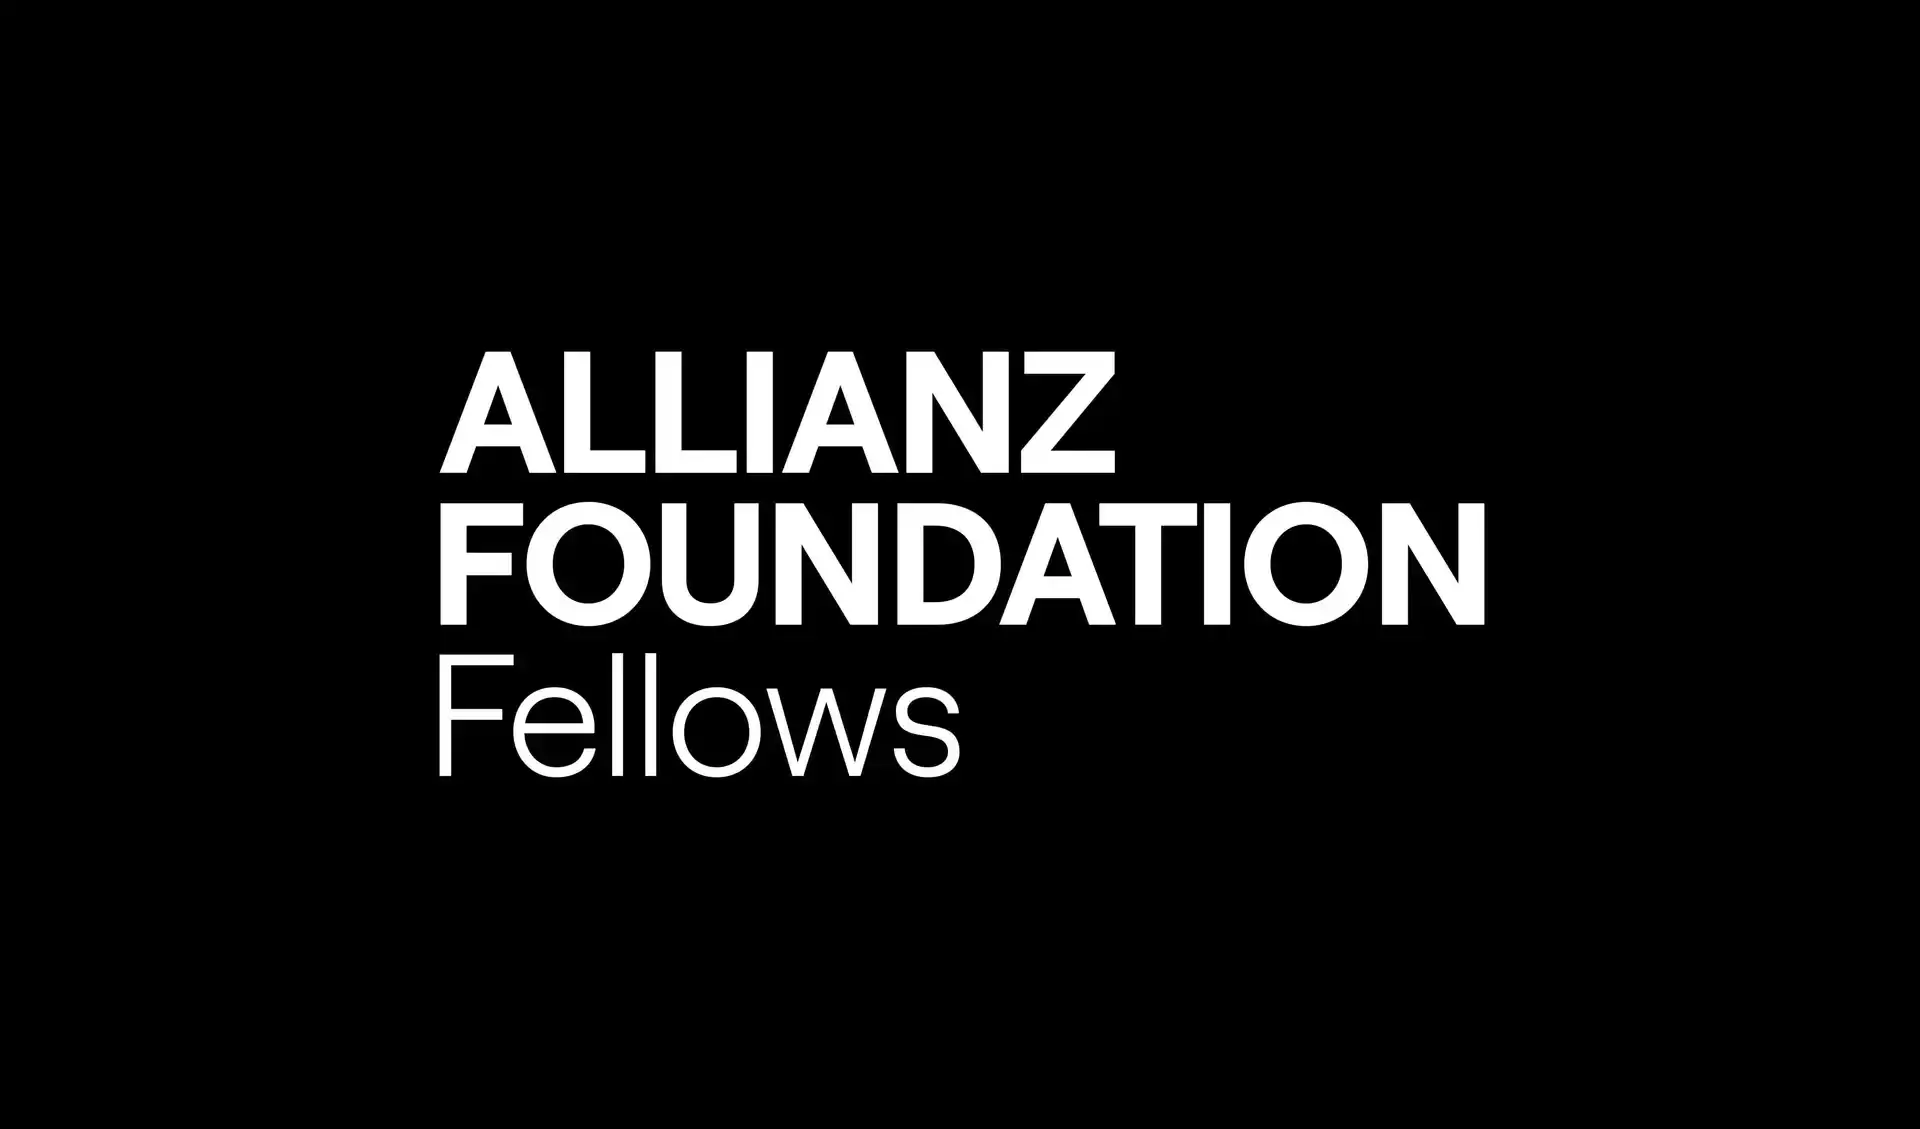 Die Wortmarke der Allianz Foundation Fellows